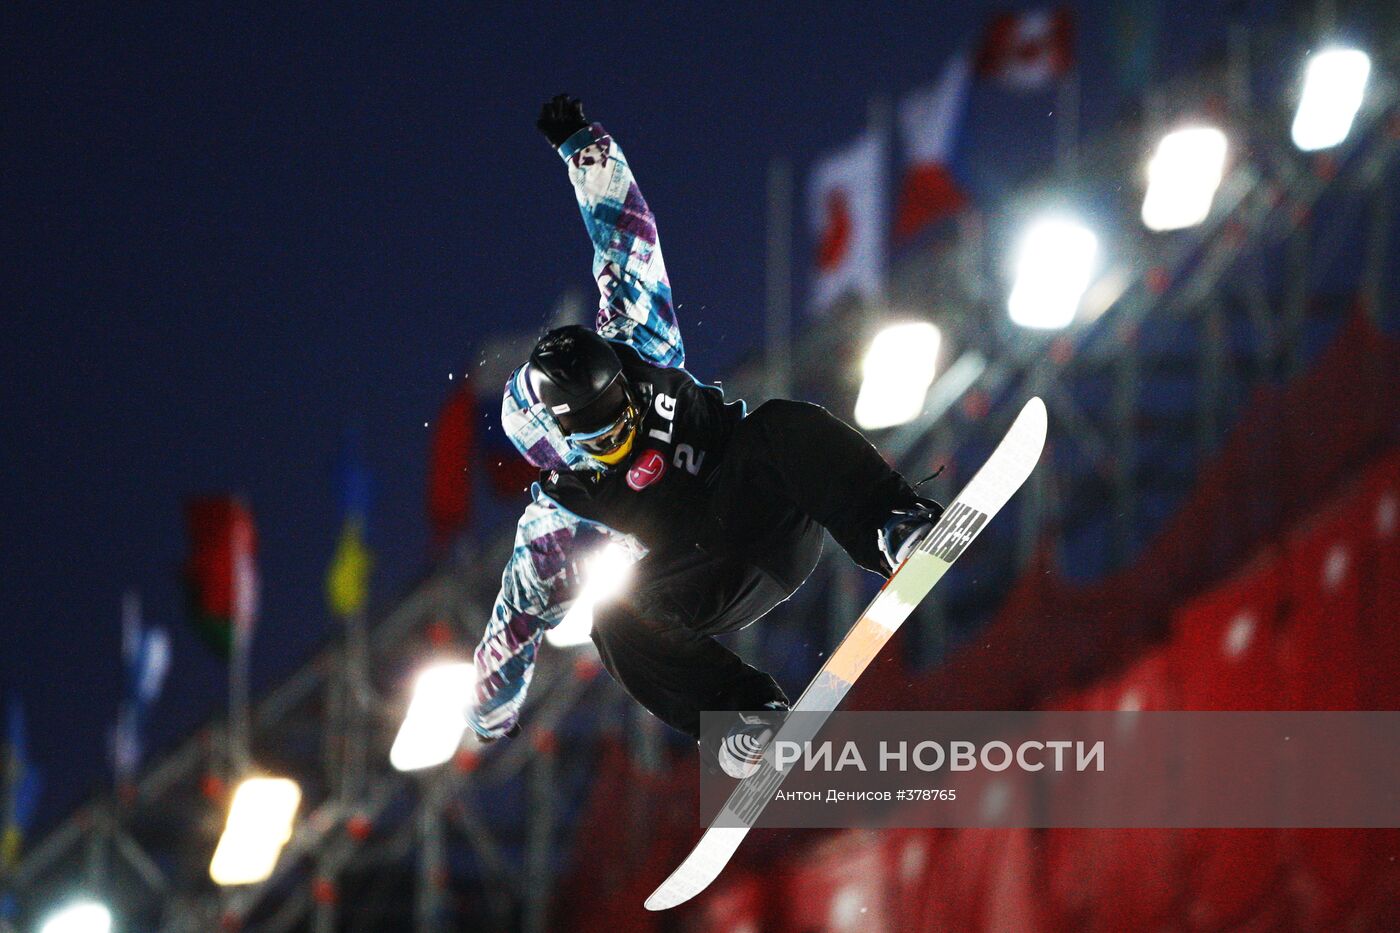 Финал Кубка Мира по сноуборду в дисциплине биг-эйр в Москве